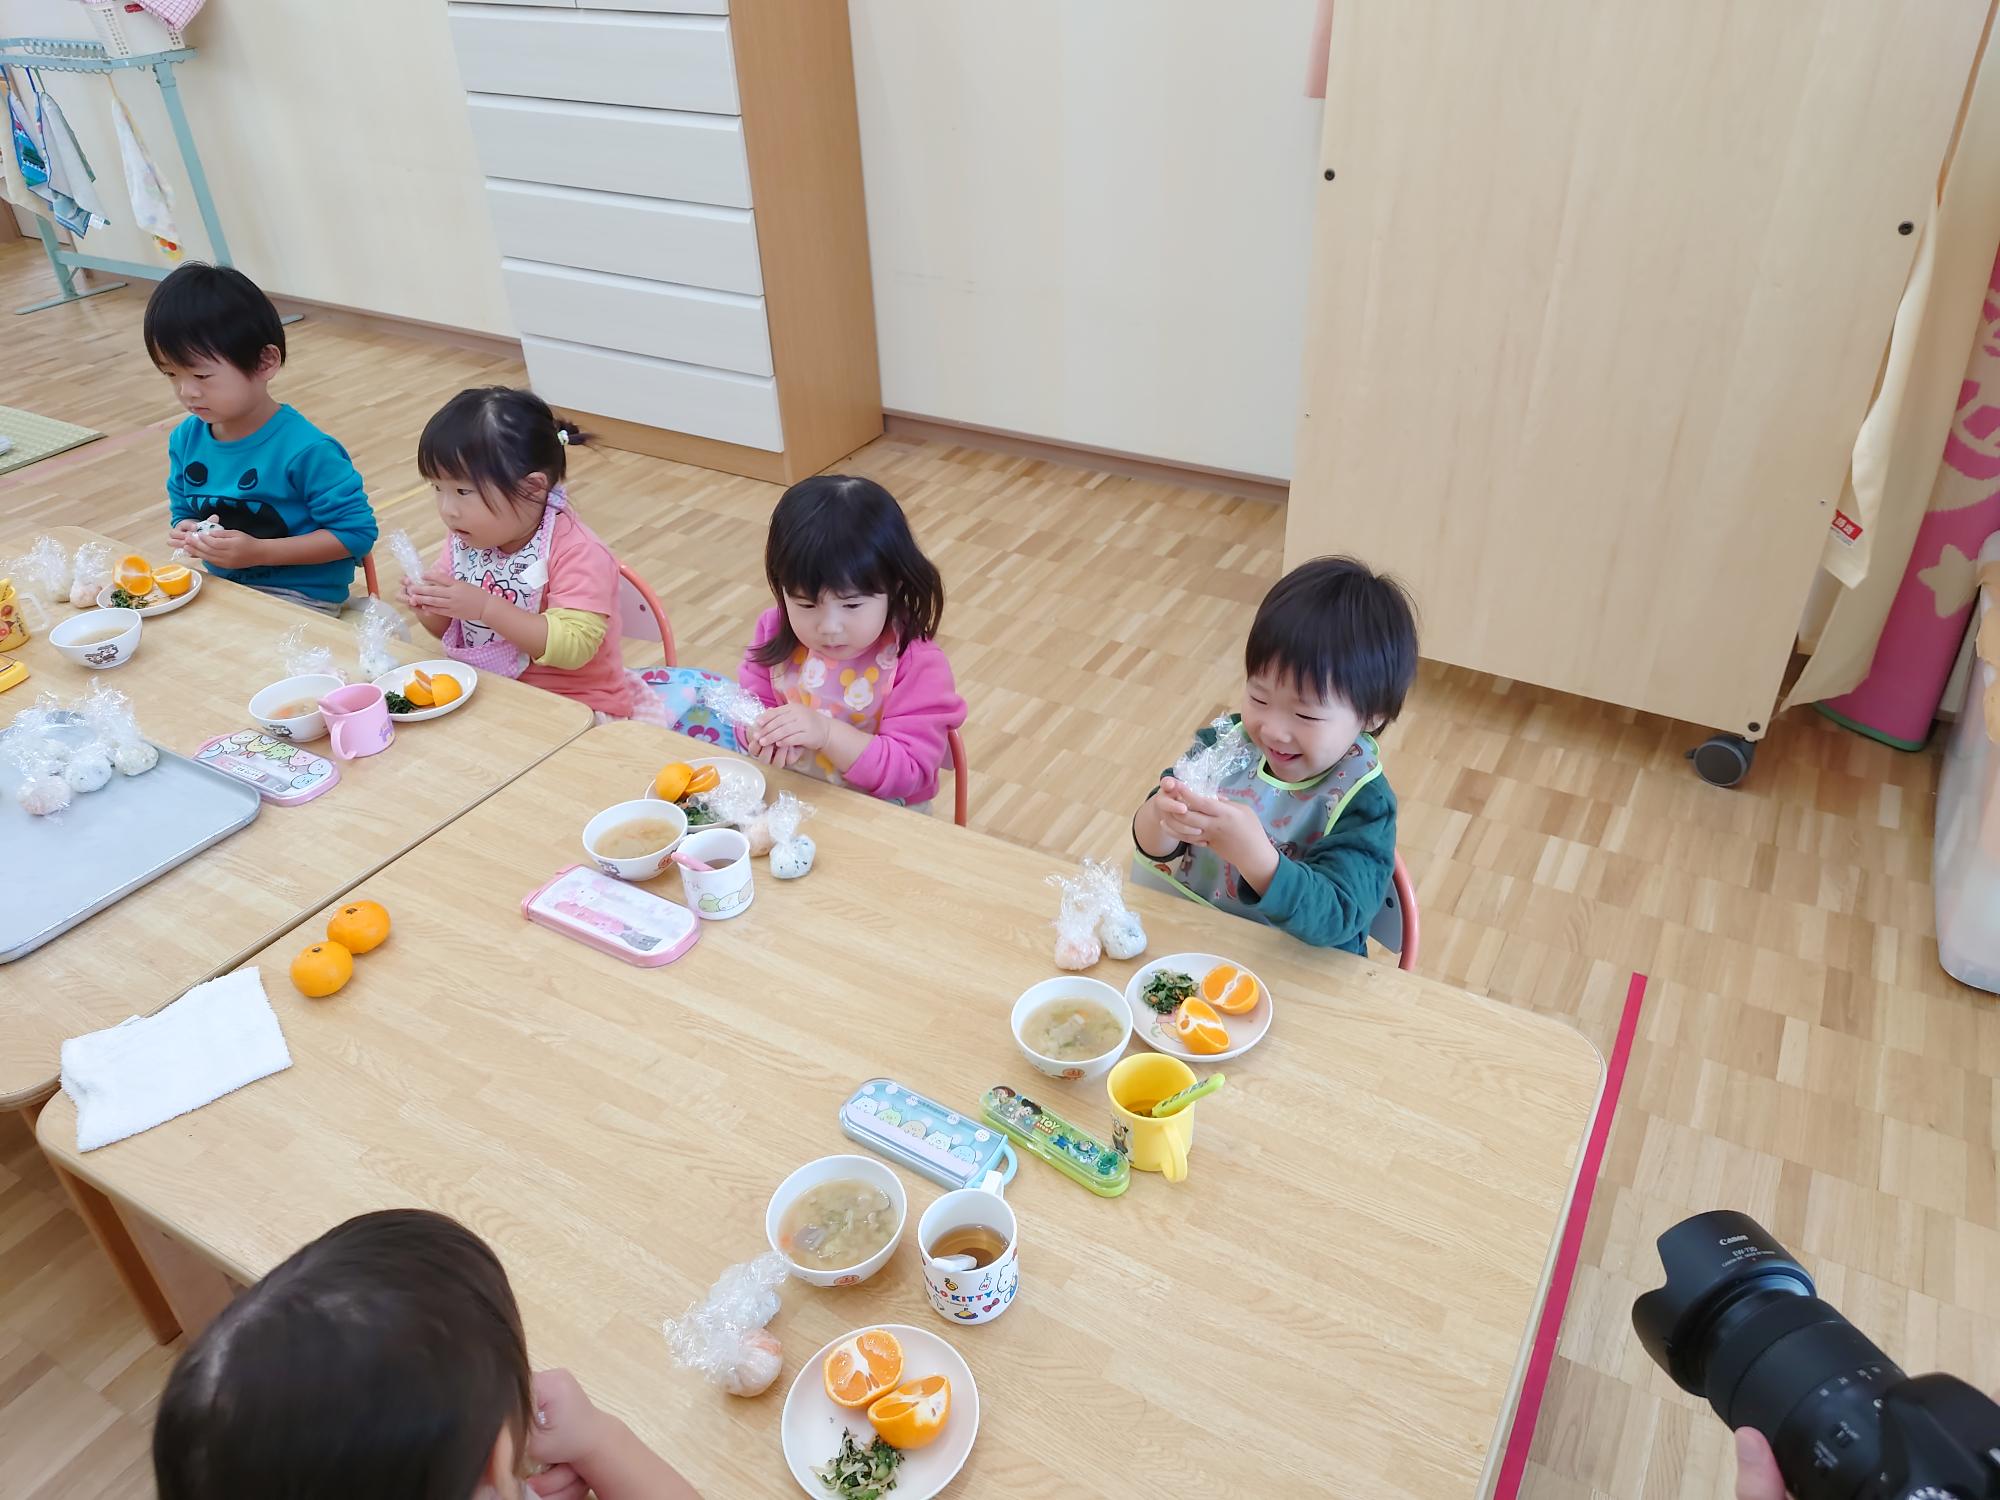 ラップで包まれたご飯を握る2歳児の子どもたち